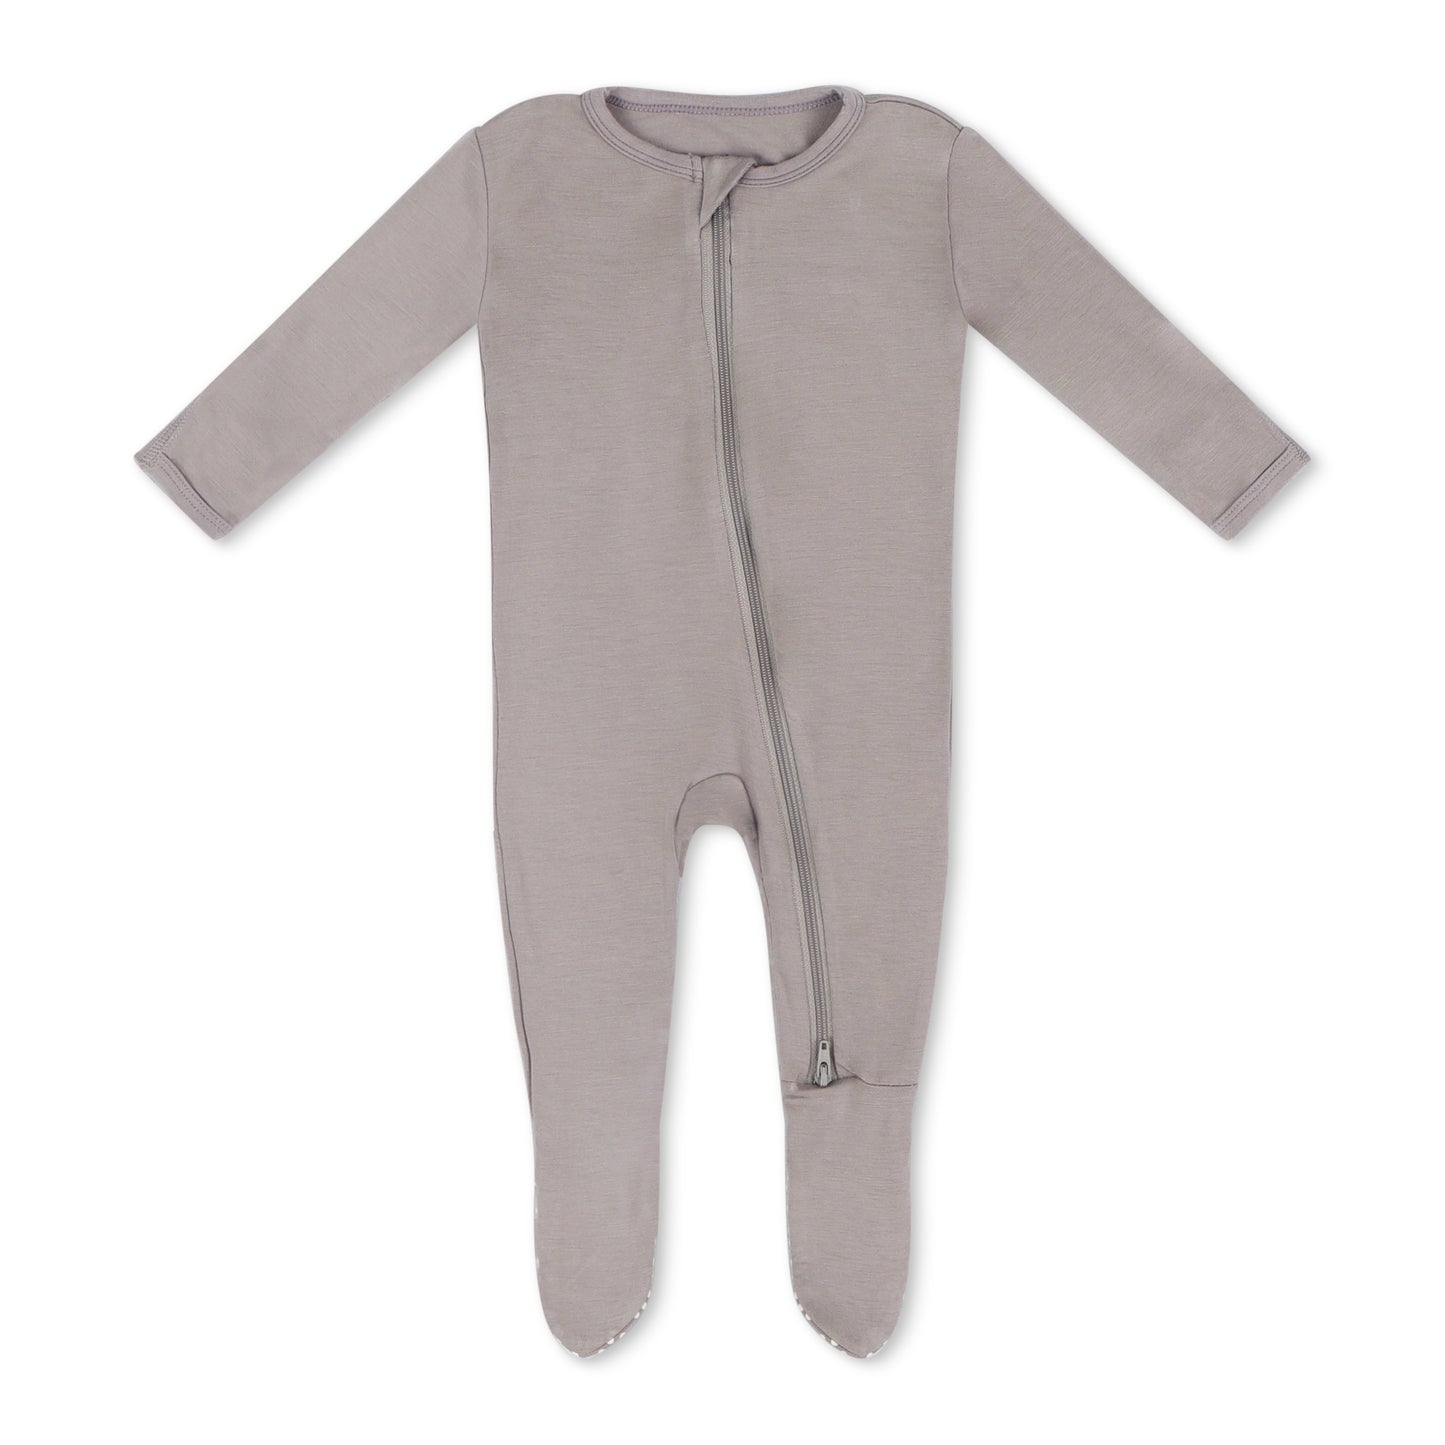 gray footie pajama